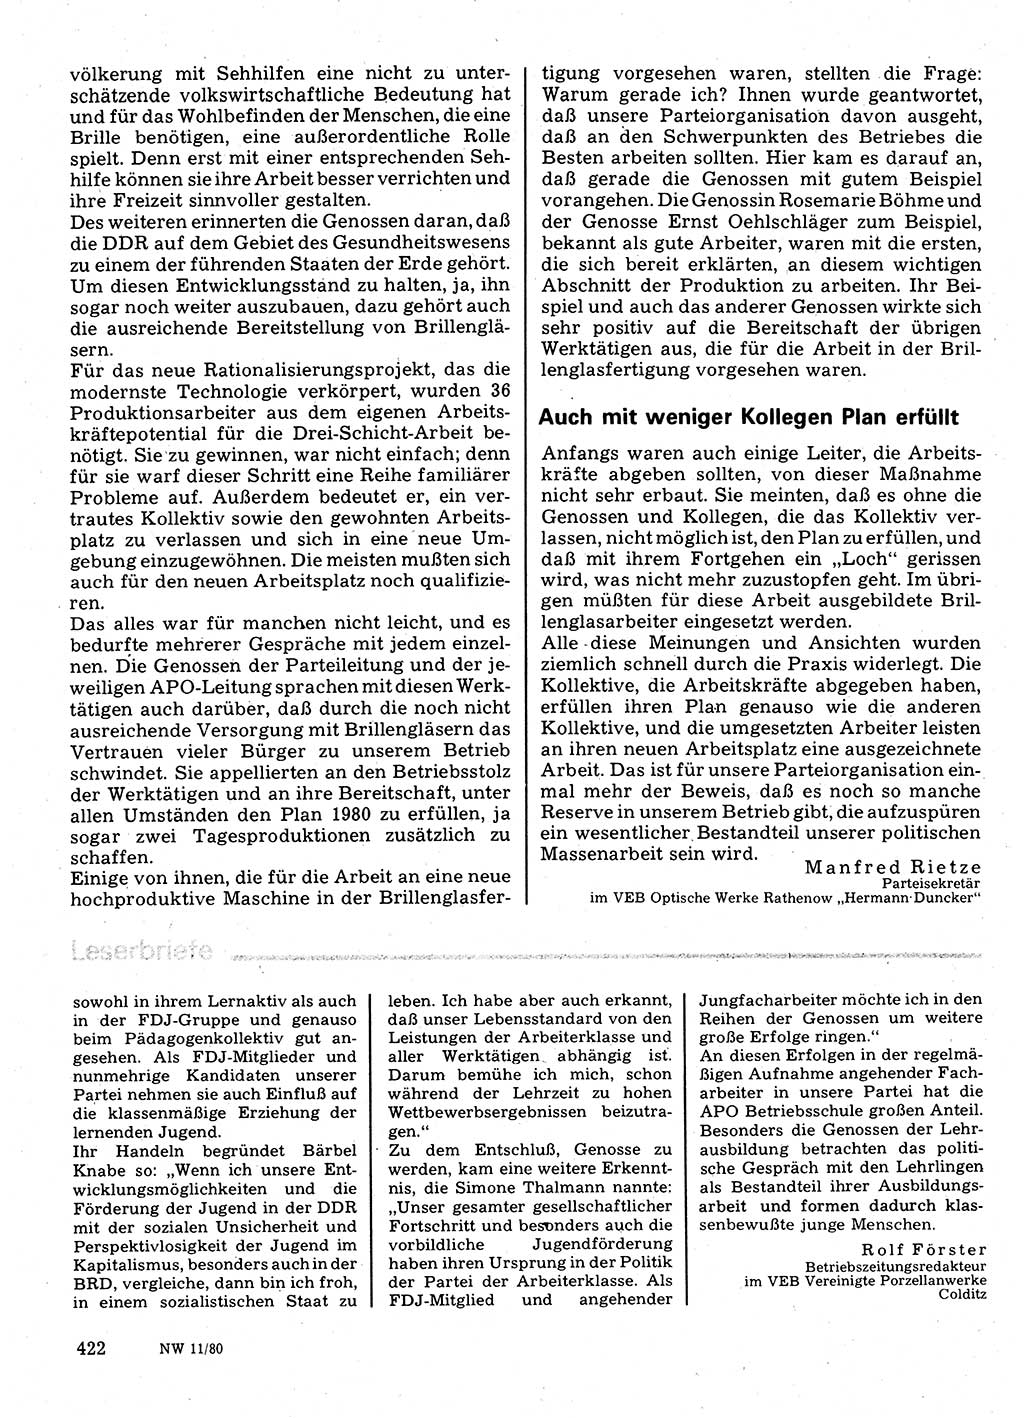 Neuer Weg (NW), Organ des Zentralkomitees (ZK) der SED (Sozialistische Einheitspartei Deutschlands) für Fragen des Parteilebens, 35. Jahrgang [Deutsche Demokratische Republik (DDR)] 1980, Seite 422 (NW ZK SED DDR 1980, S. 422)